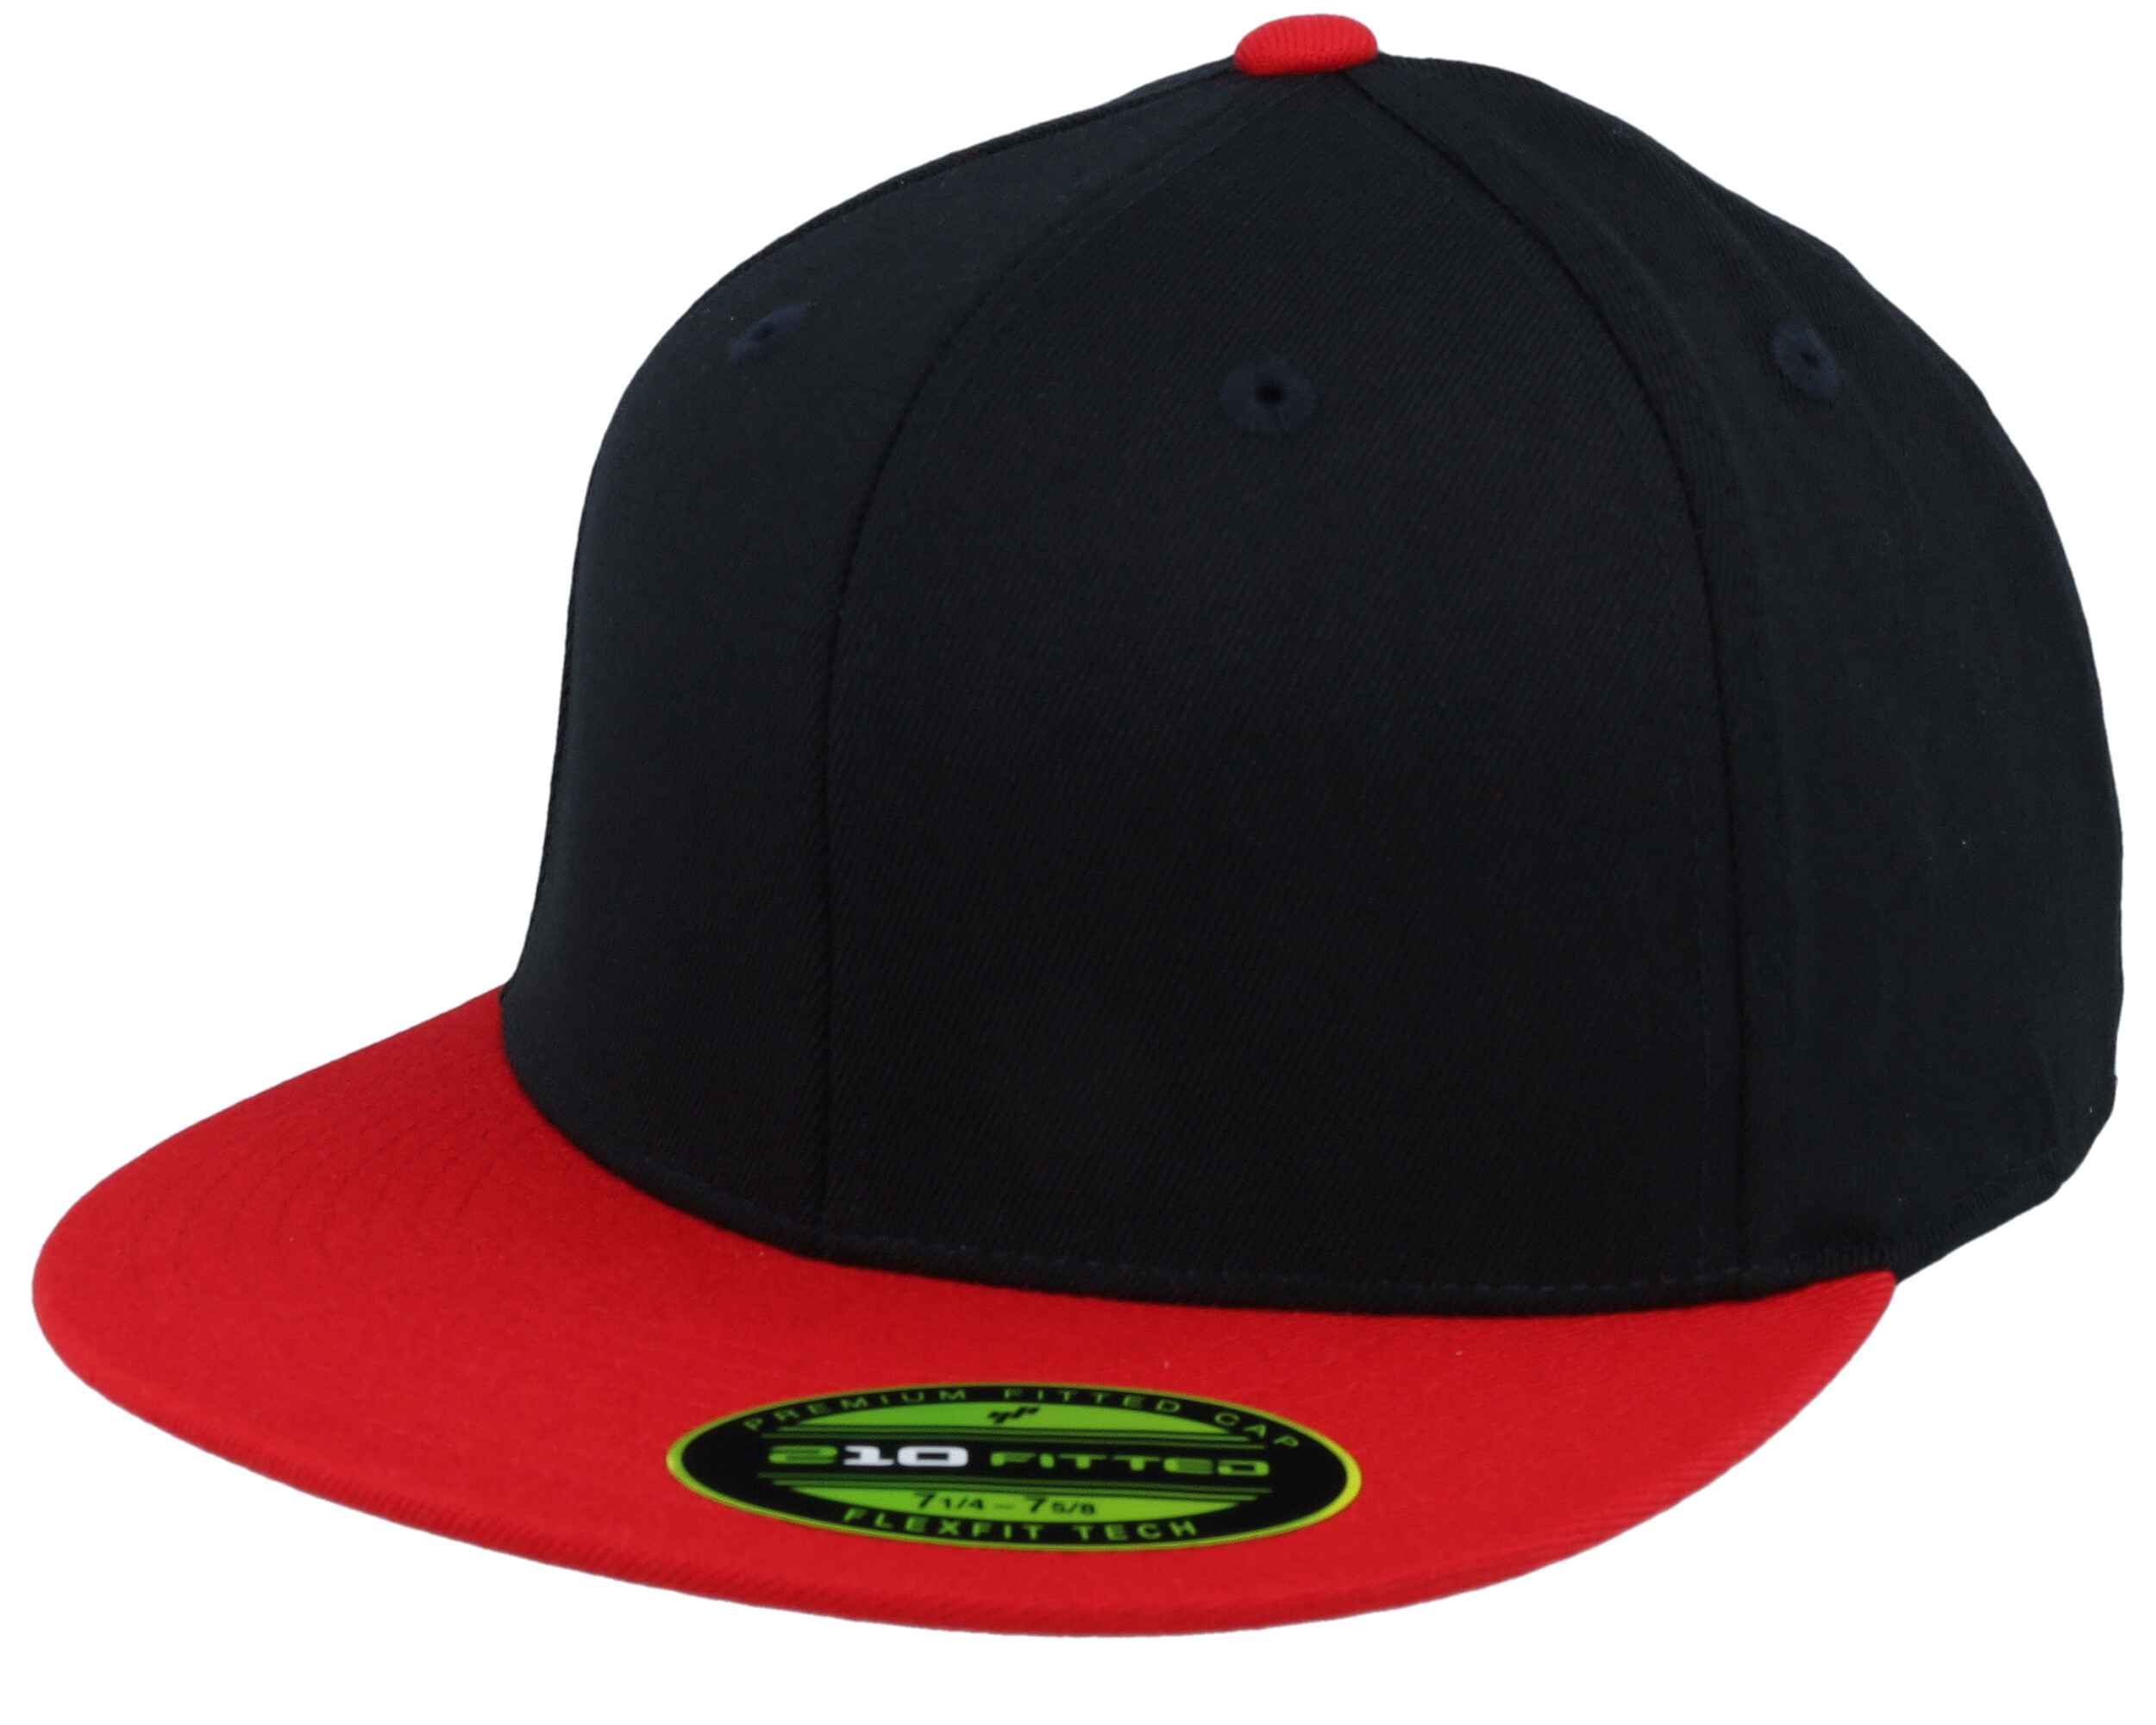 Premium 210 2-Tone Black/Red - cap Flexfit Fitted